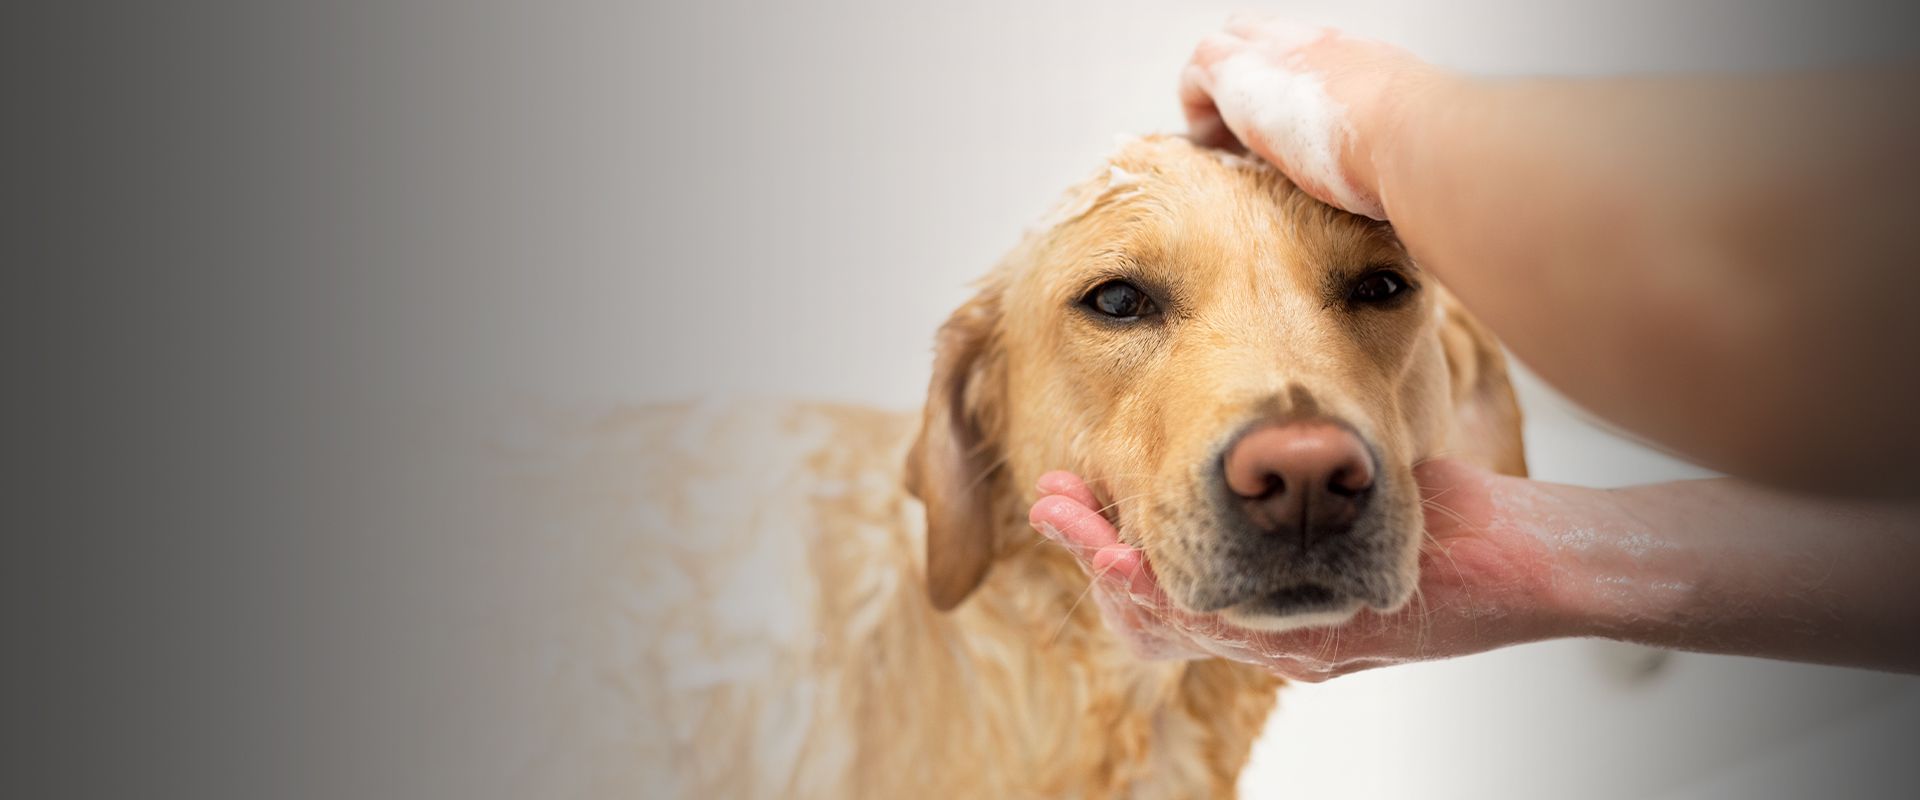 pet groomer bathing golden retriever dog